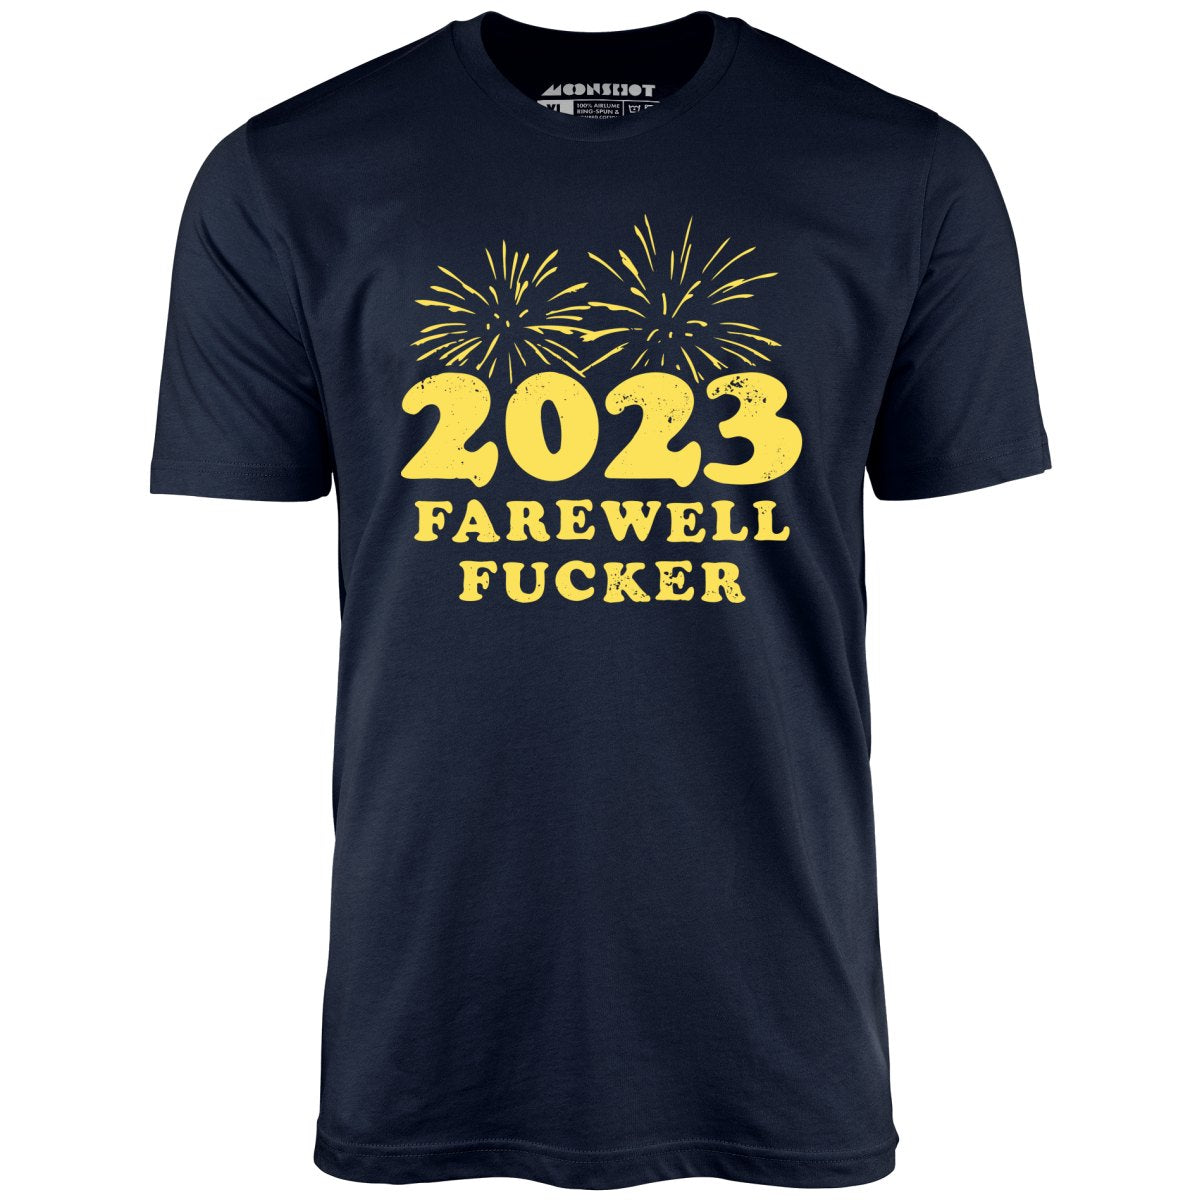 2023 Farewell Fucker - Unisex T-Shirt